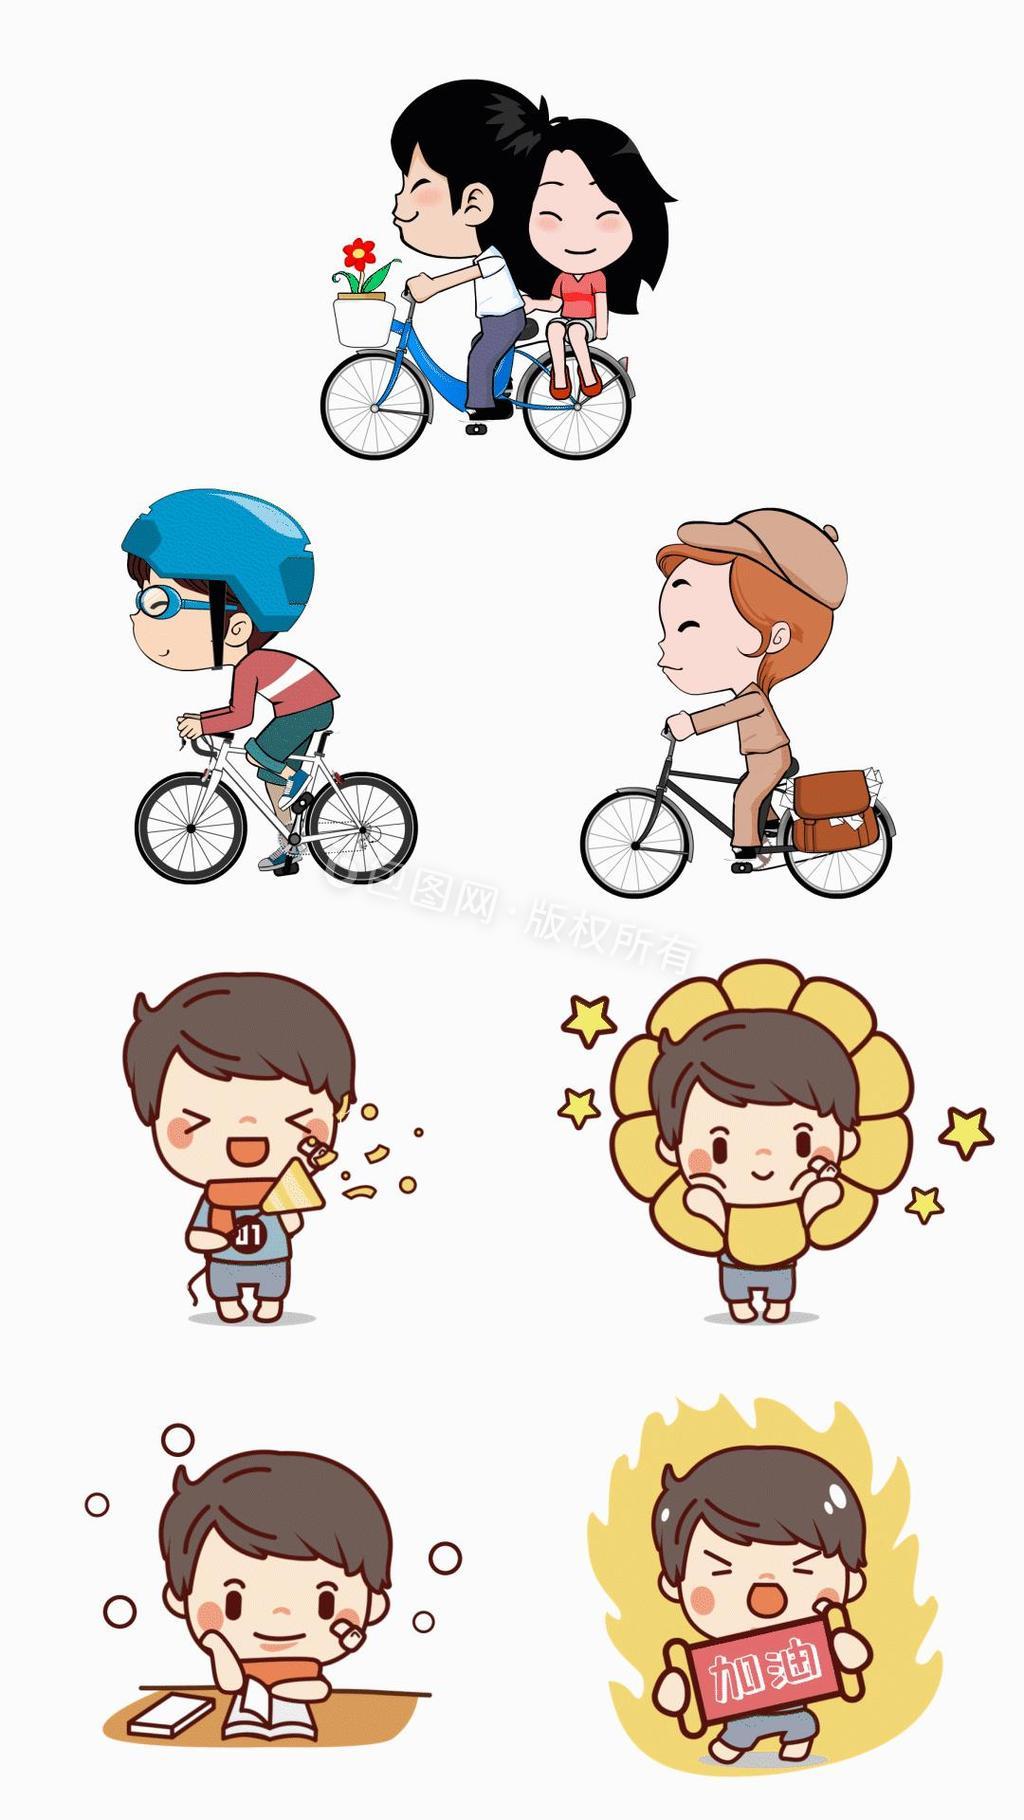 可爱小男孩和骑自行车的卡通人物动图GIF图片